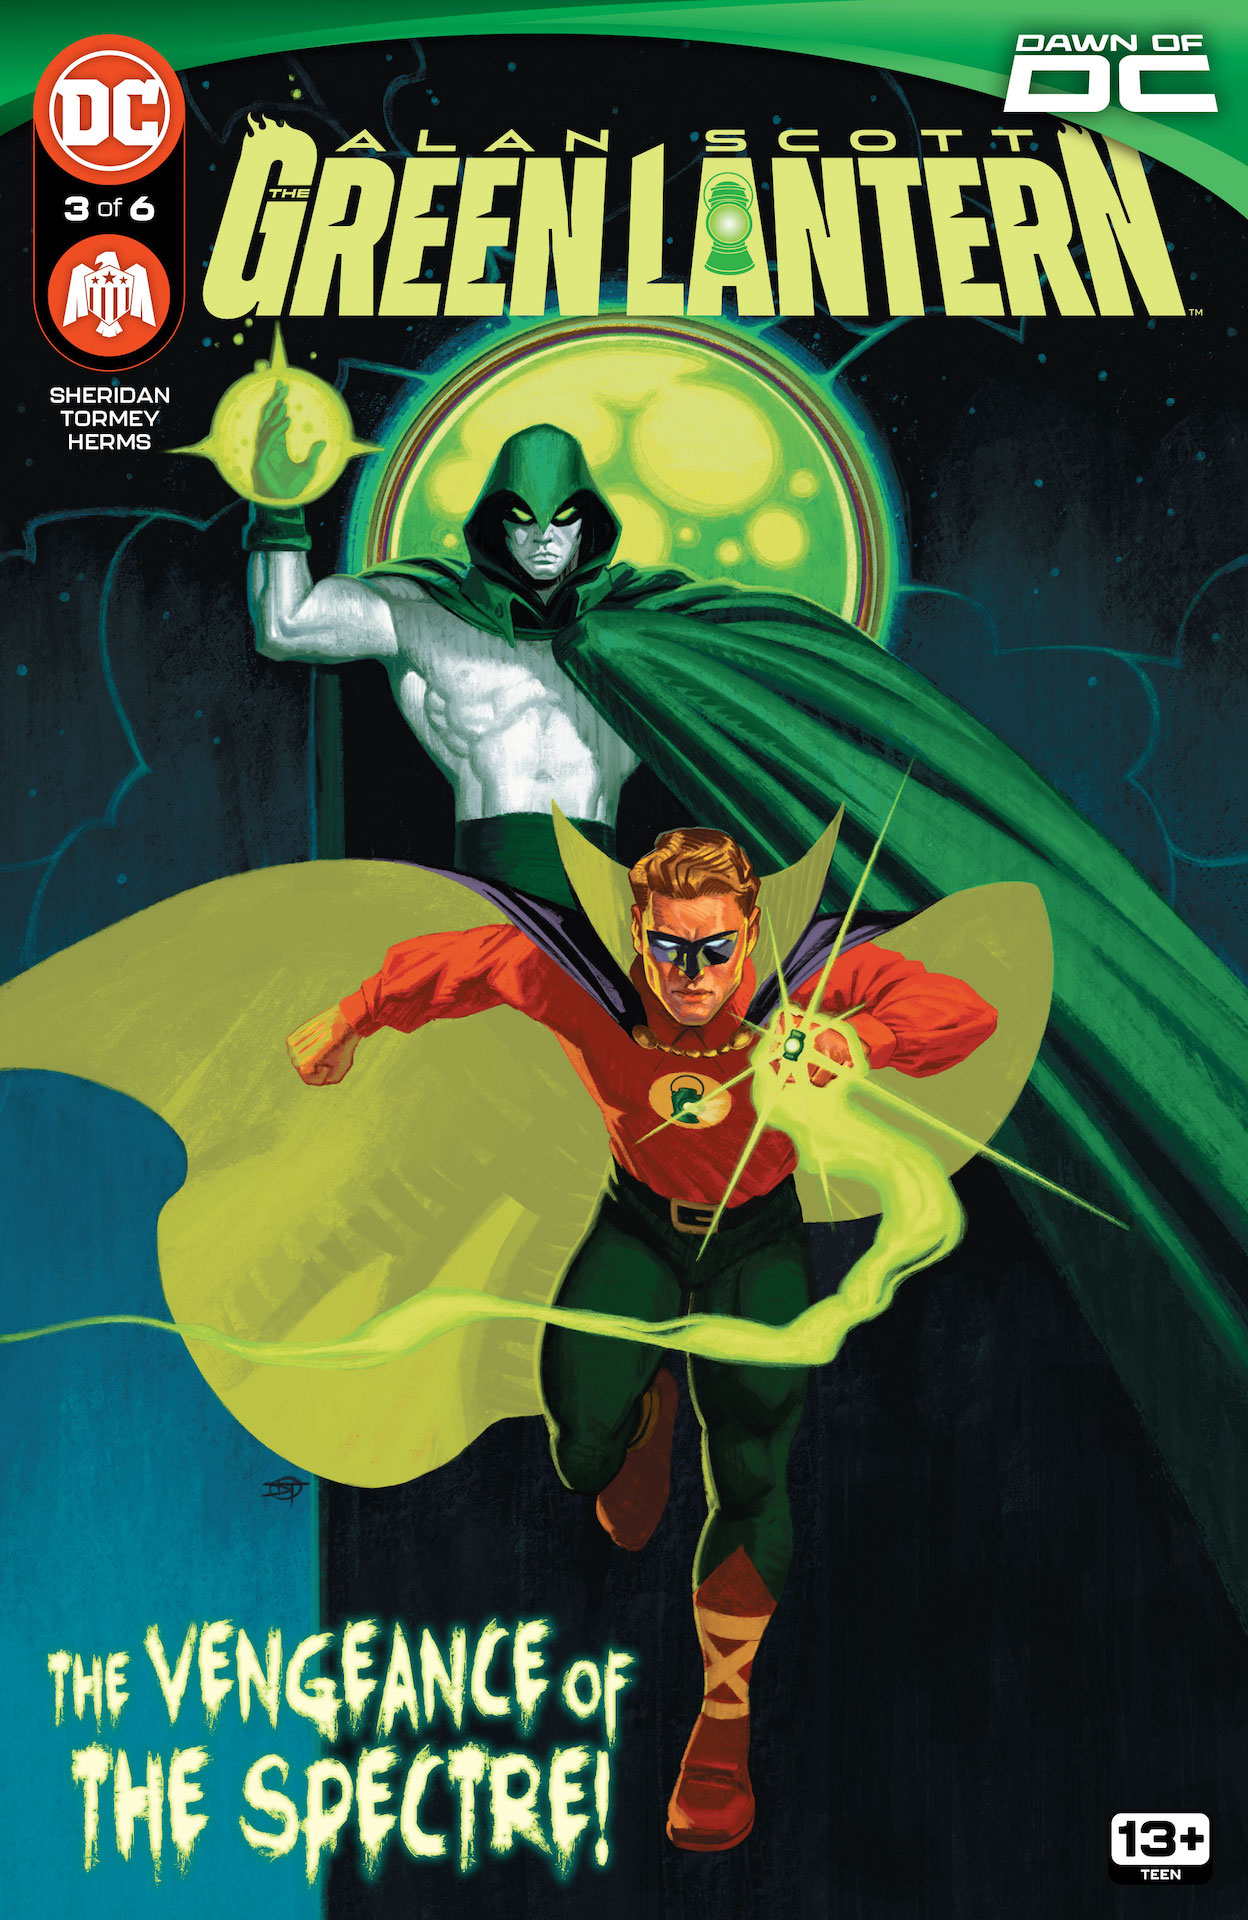 DC Preview: Alan Scott: The Green Lantern #3